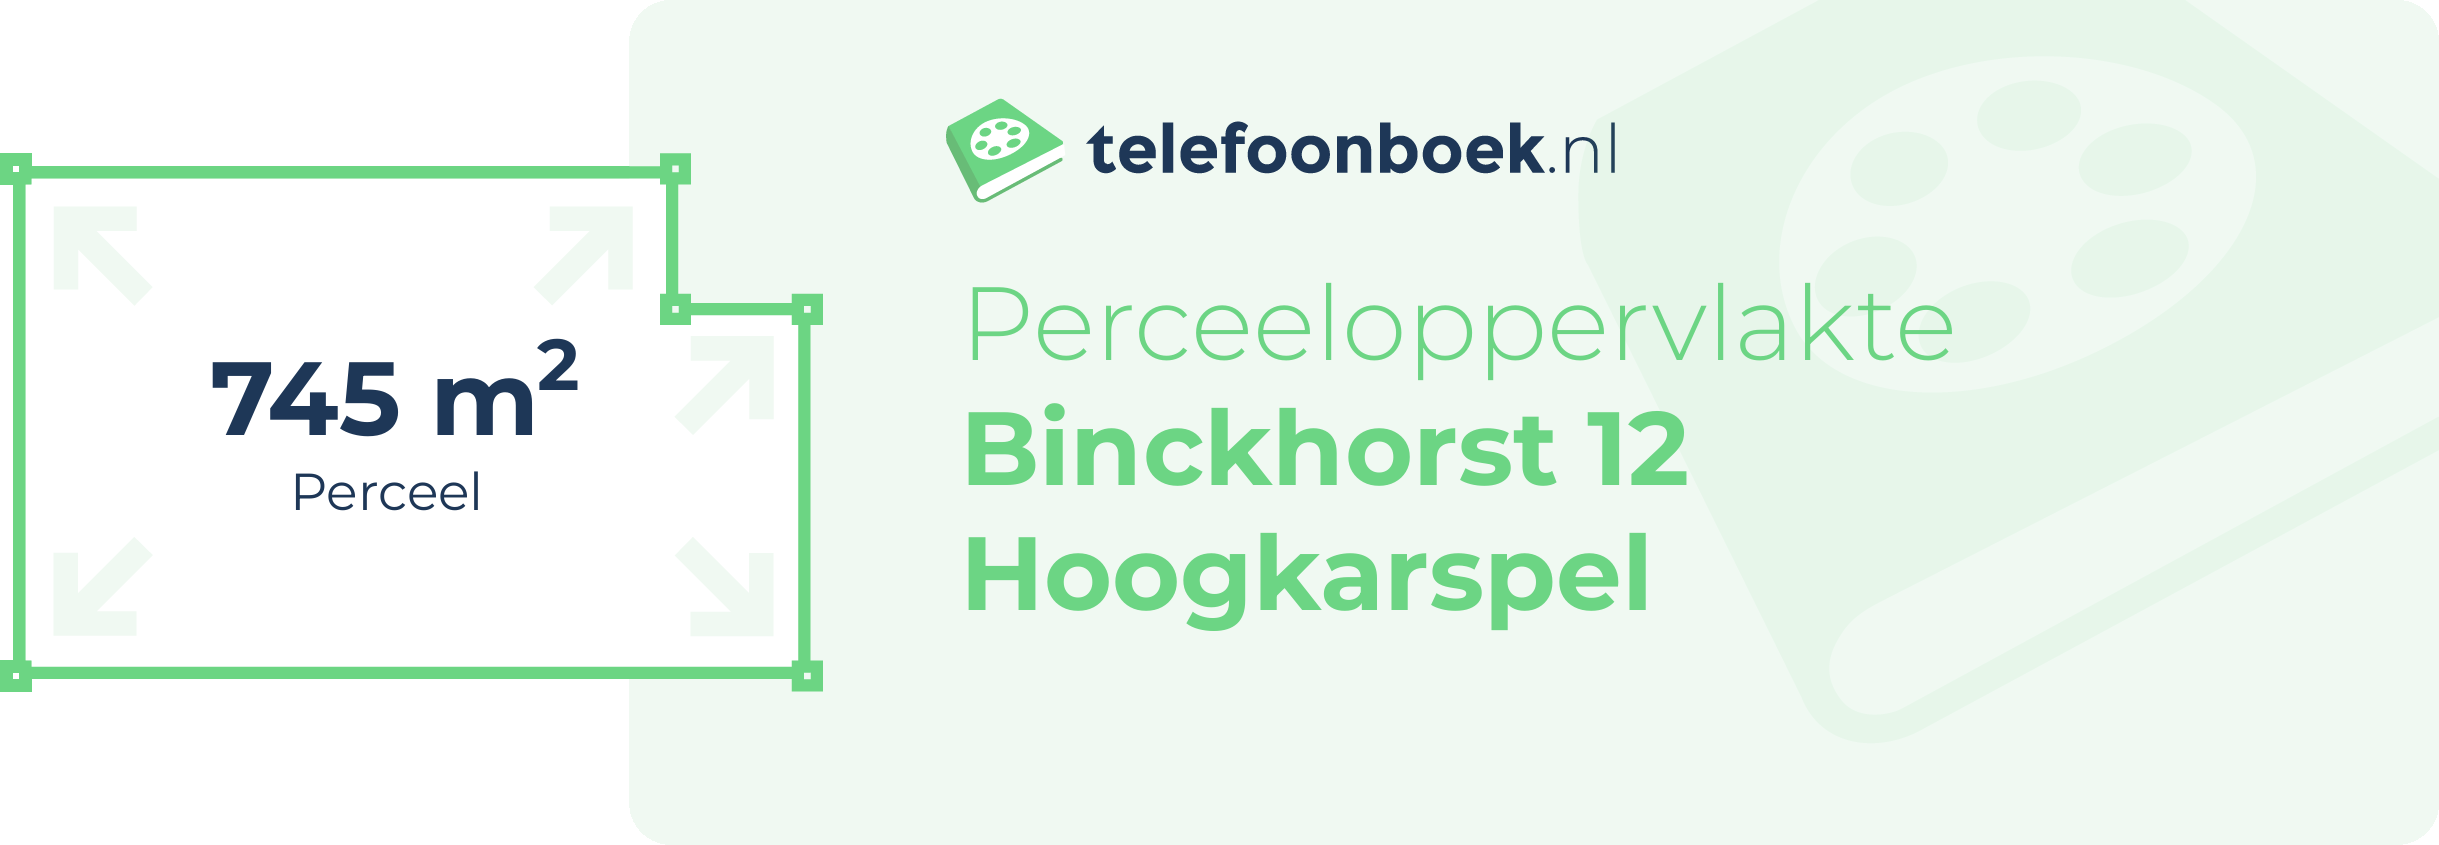 Perceeloppervlakte Binckhorst 12 Hoogkarspel